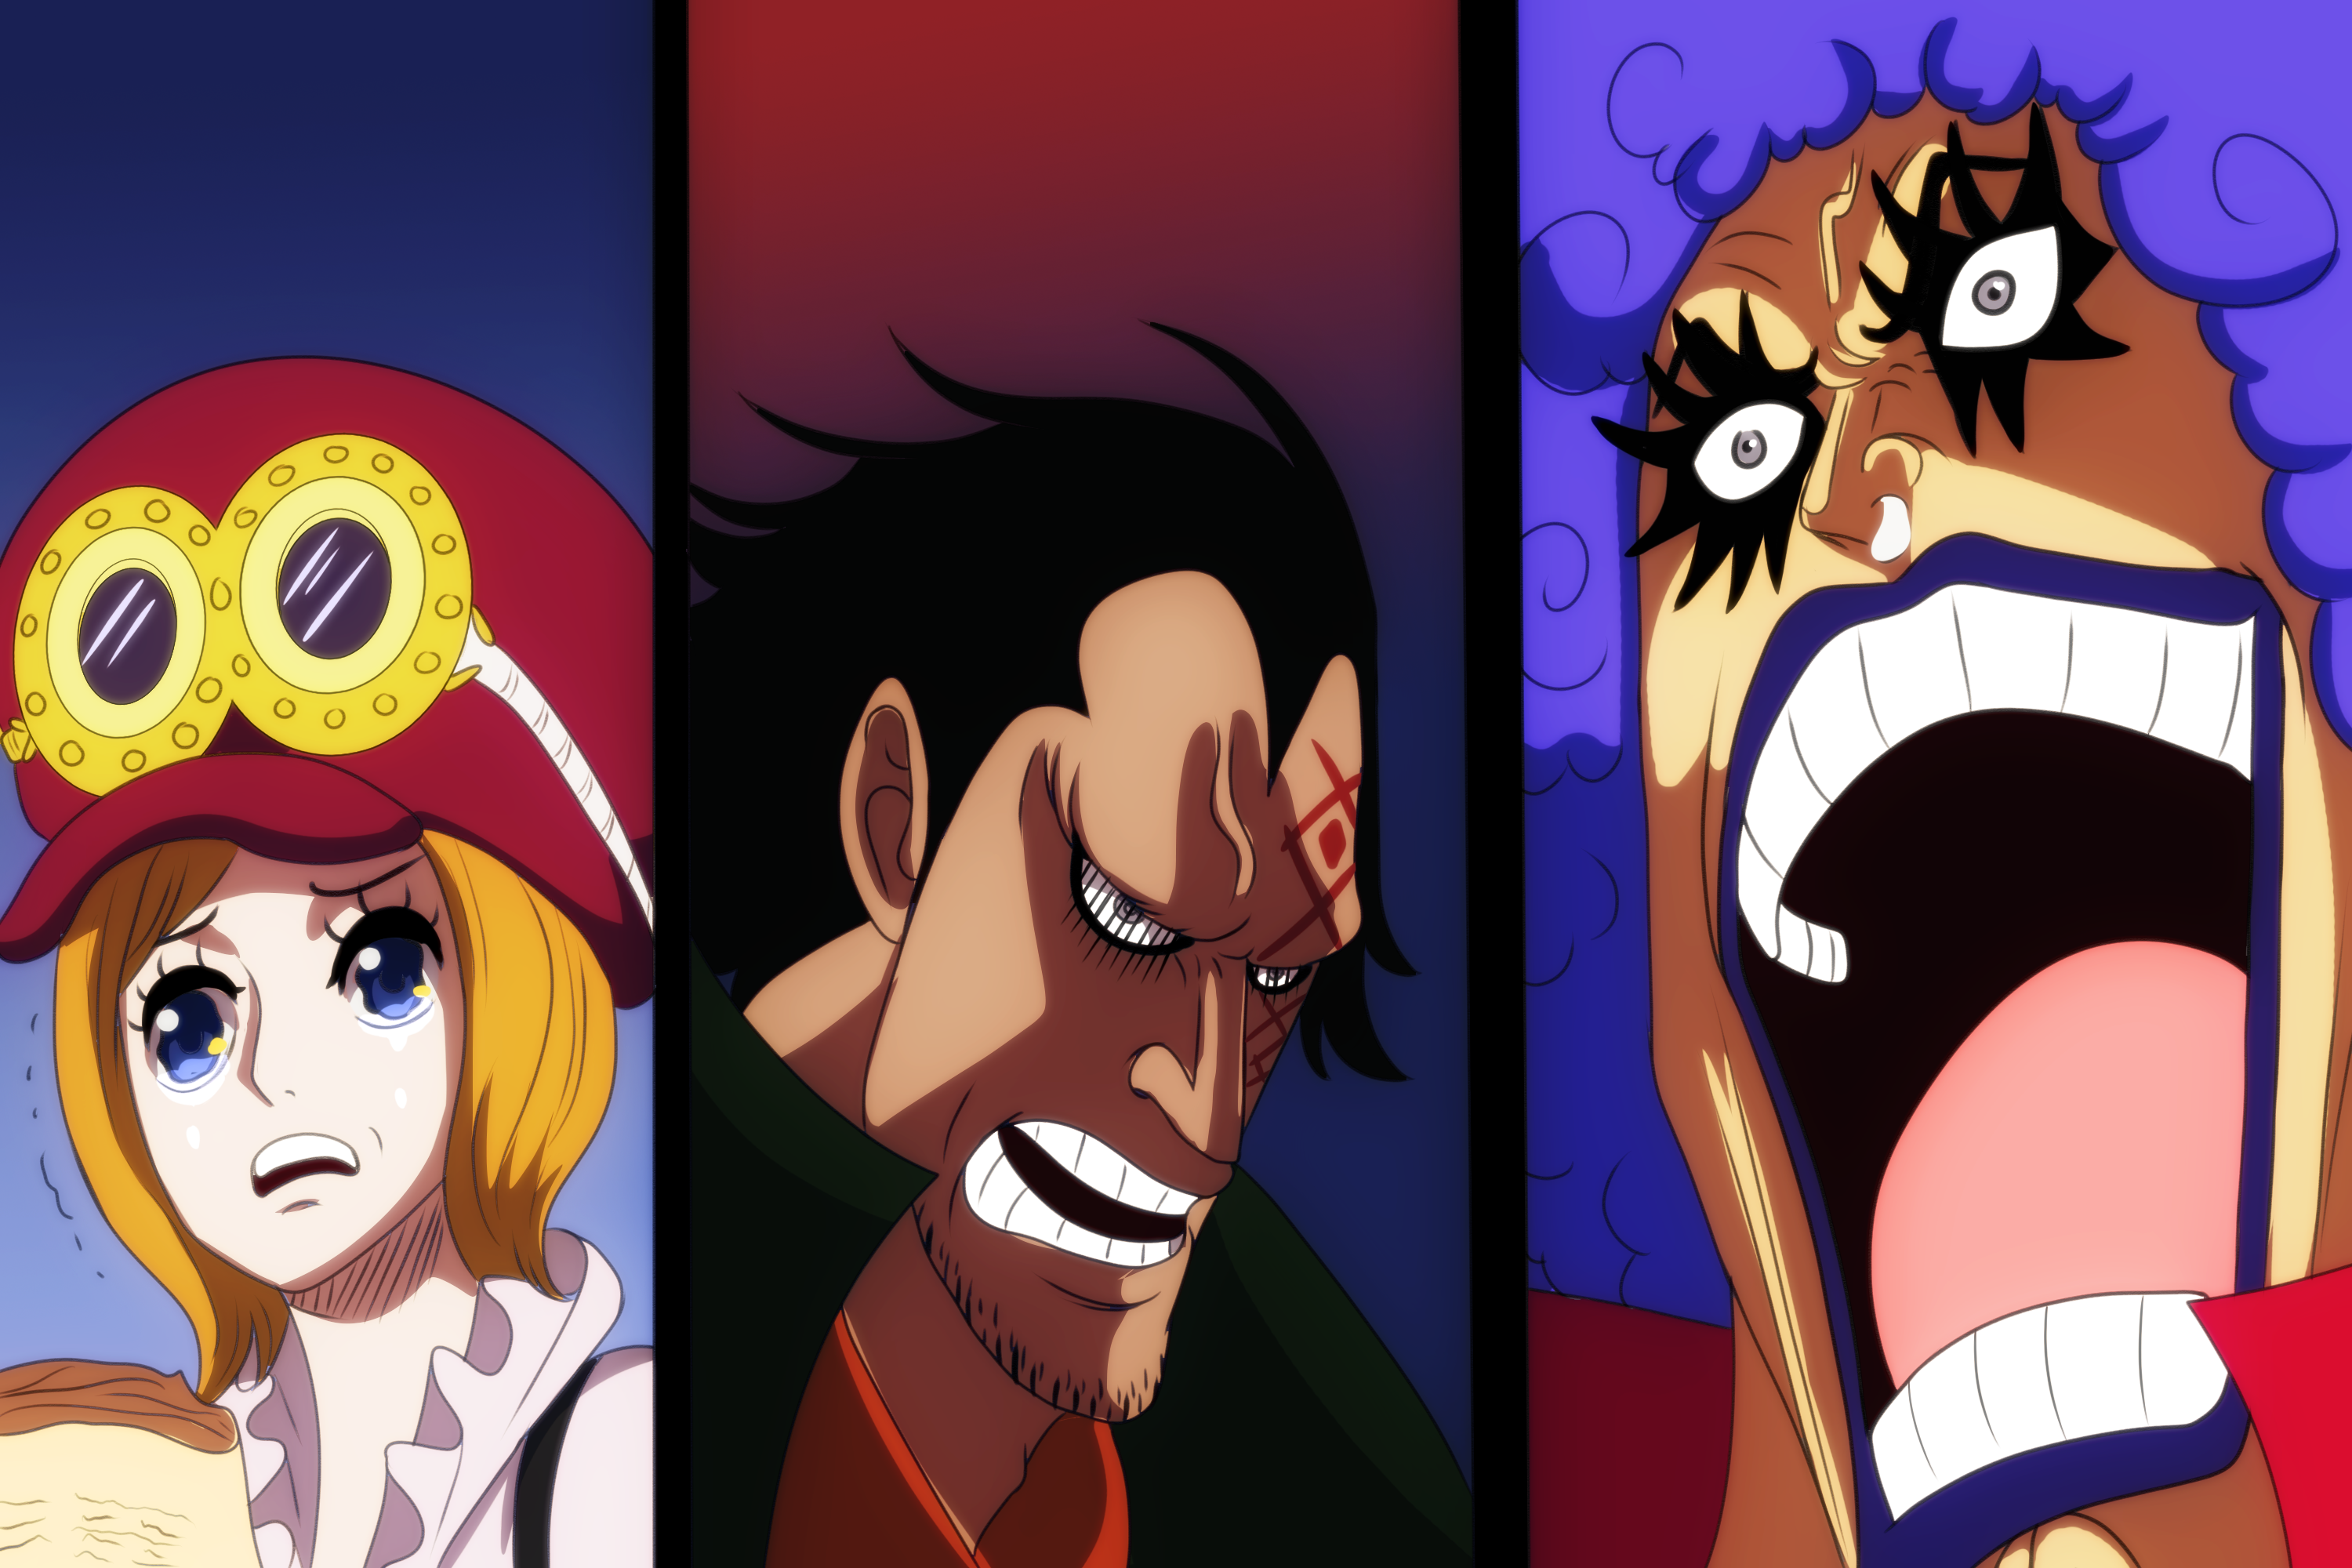 ♧] Revolucionarios - One Piece RPG